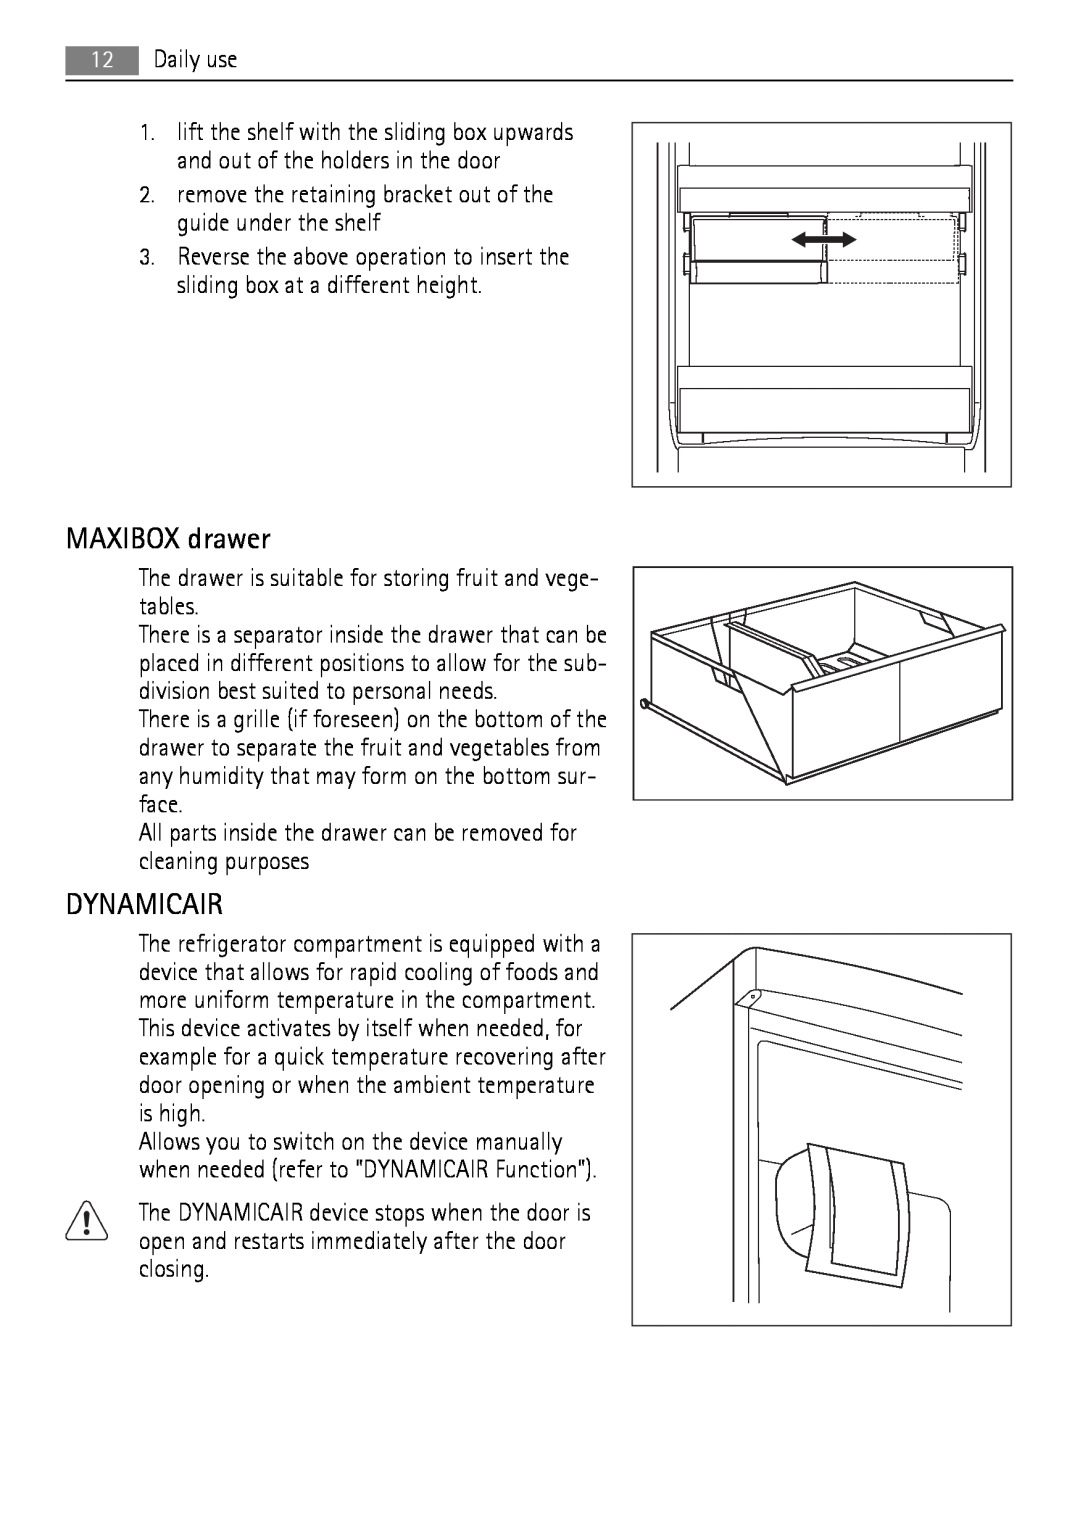 AEG SCT71900S0 user manual MAXIBOX drawer, Dynamicair 